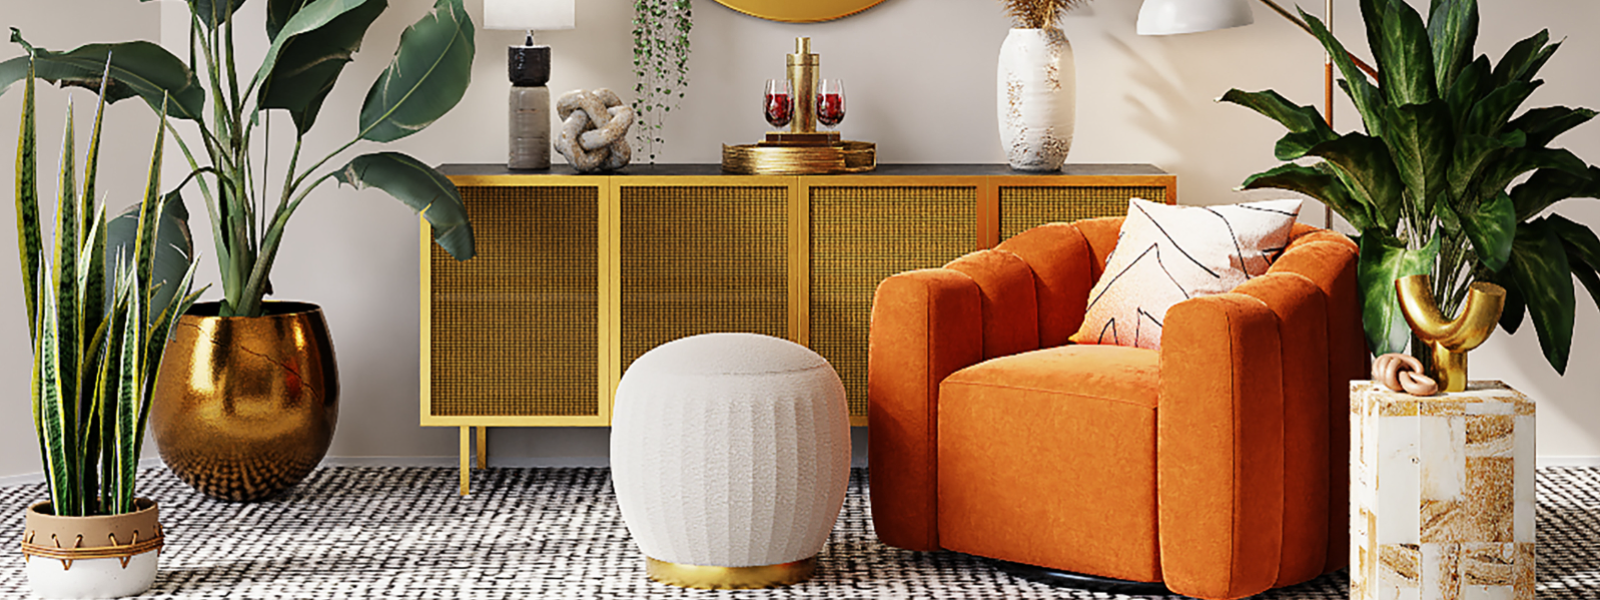 SMART MÖÖBEL OÜ - Smart24.ee pakub teile parimat valikut kvaliteetset mööblit oma kodu ja kontori sisustamiseks. Meie...